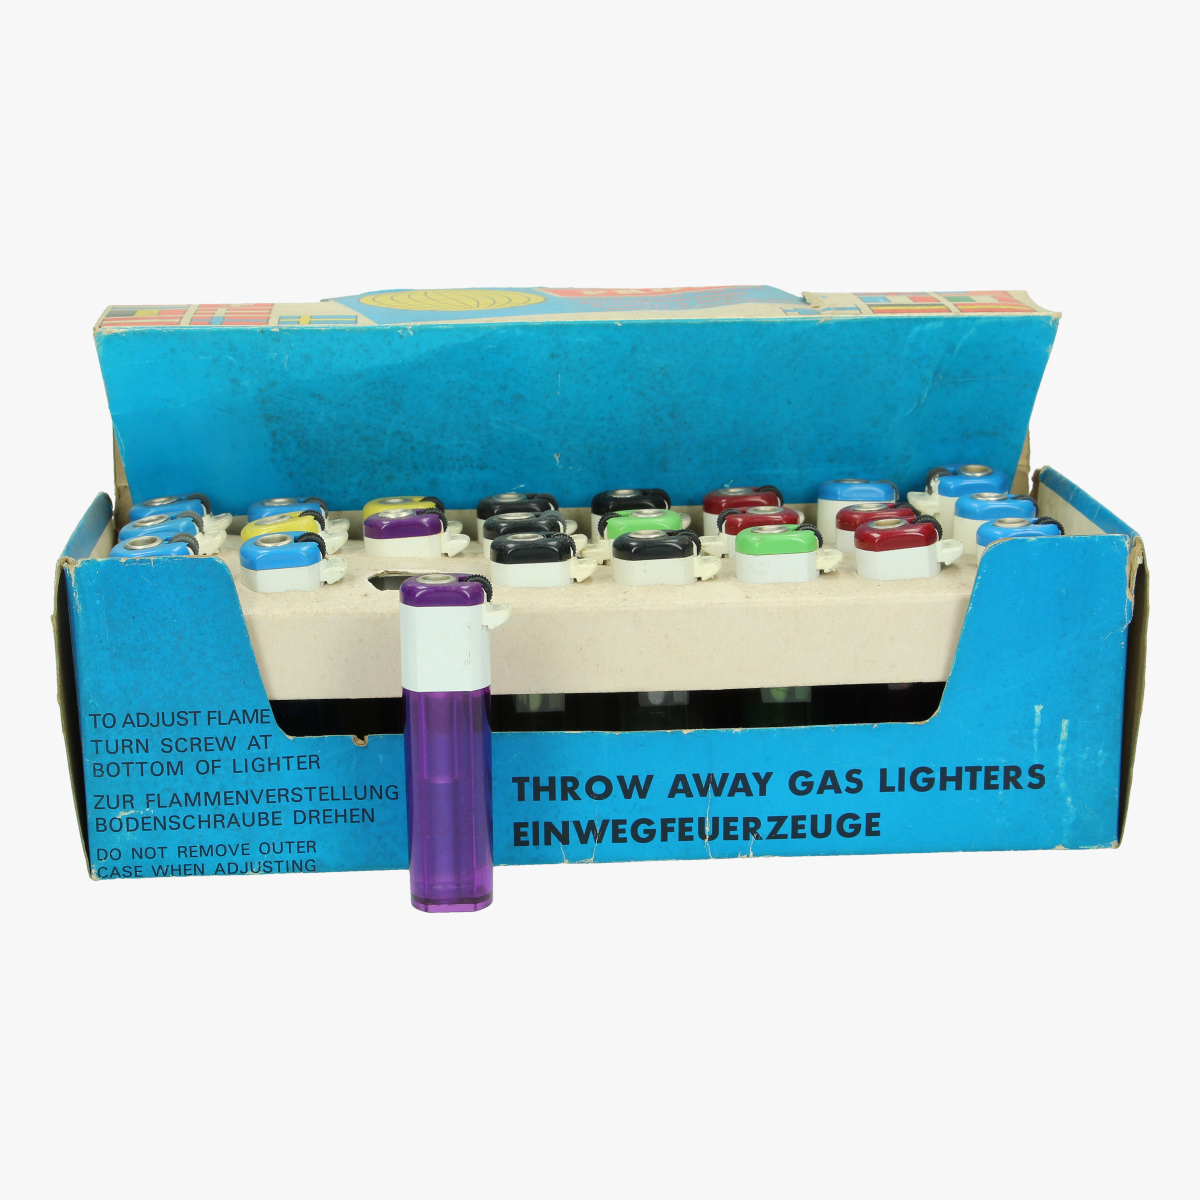 Afbeeldingen van oude aansteker prof throw-away lighters full box